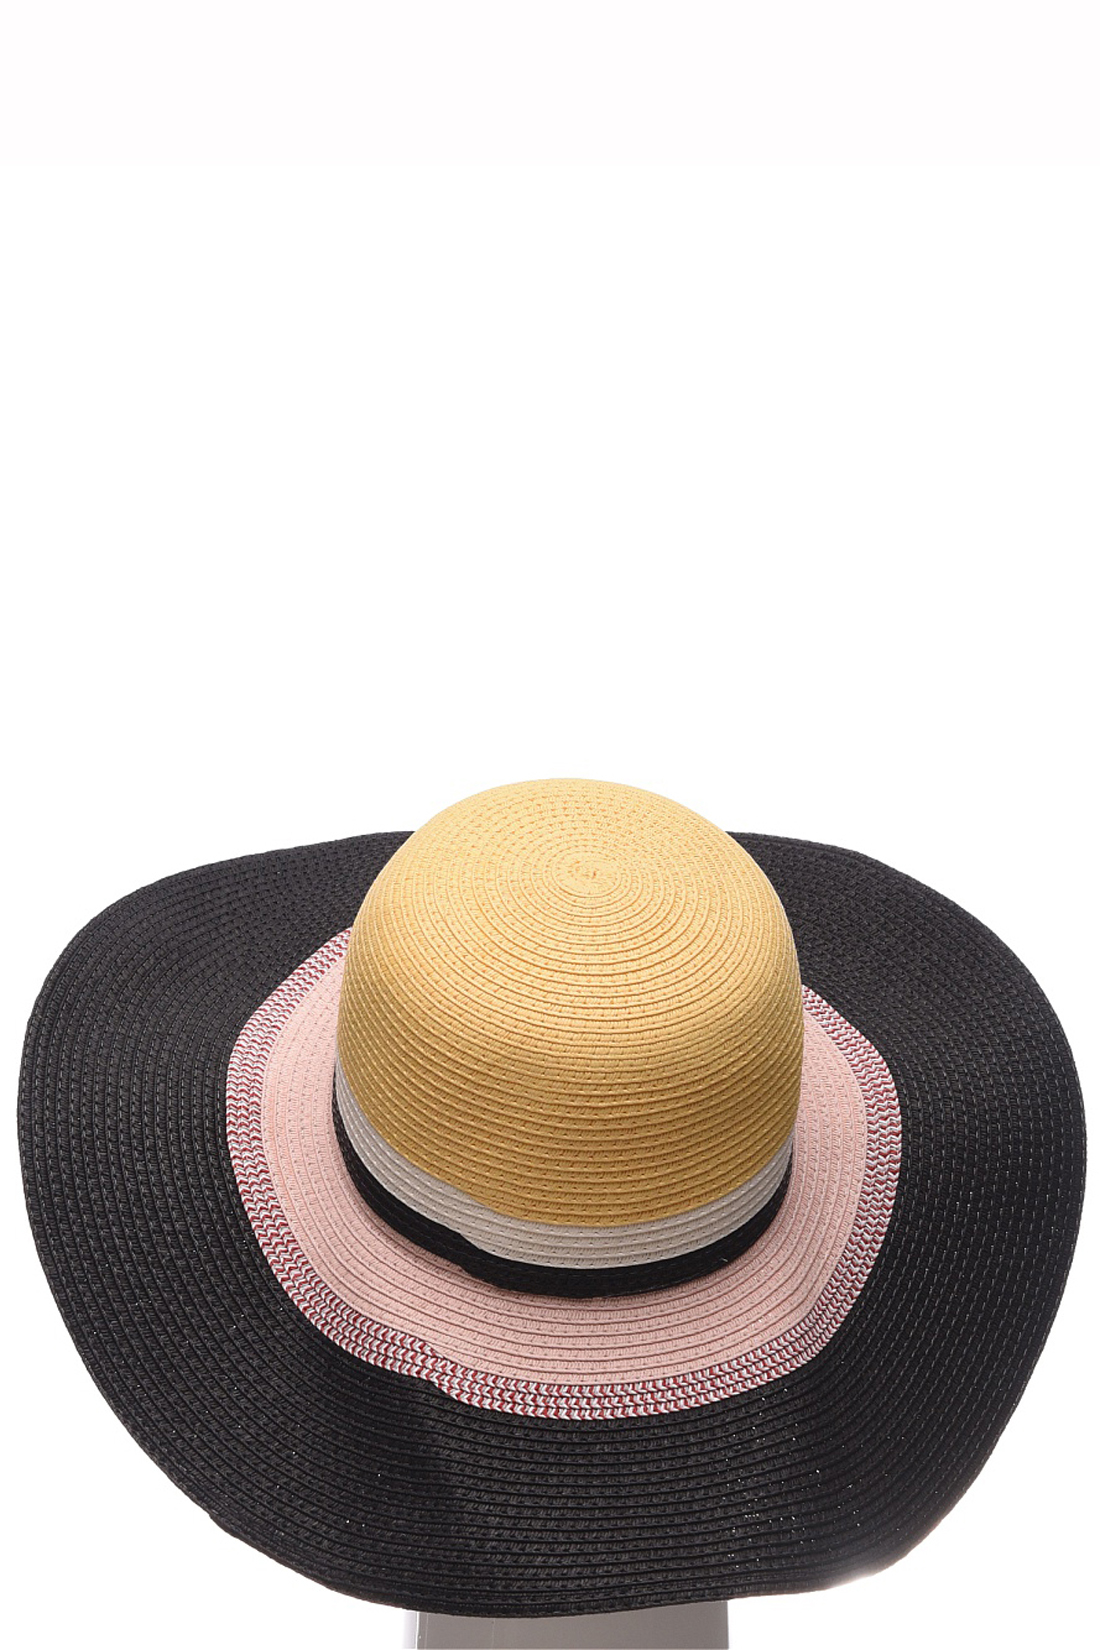 Шляпа с широкими полосами (арт. baon B349002), размер Б/р 56, цвет multicolor#многоцветный Шляпа с широкими полосами (арт. baon B349002) - фото 4